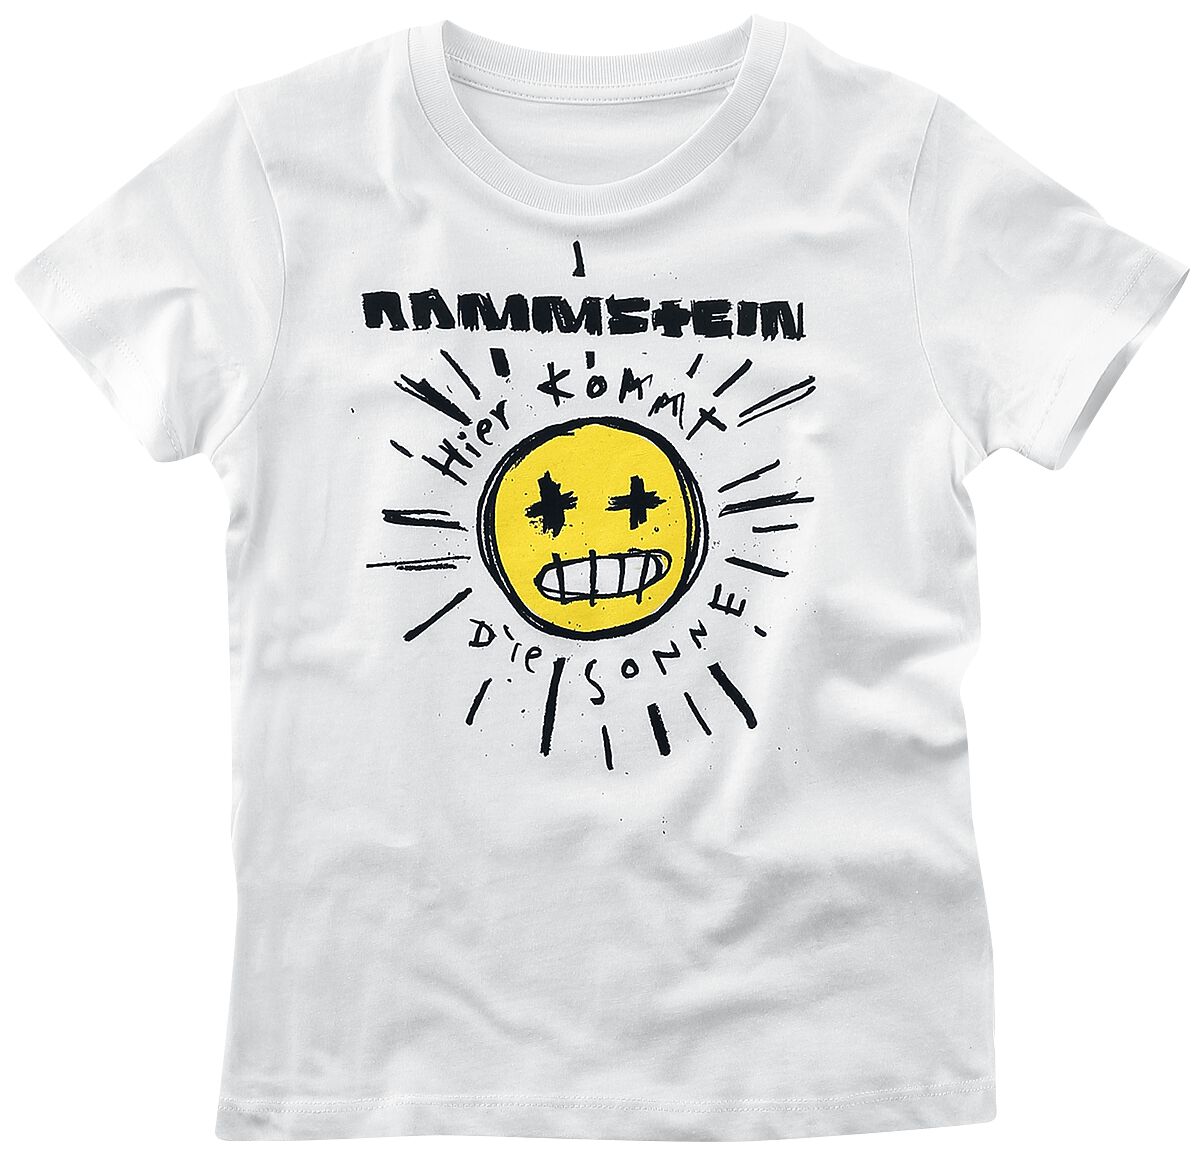 Rammstein T-Shirt für Kinder - Kids - Sonne - für Mädchen & Jungen - weiß  - Lizenziertes Merchandise!